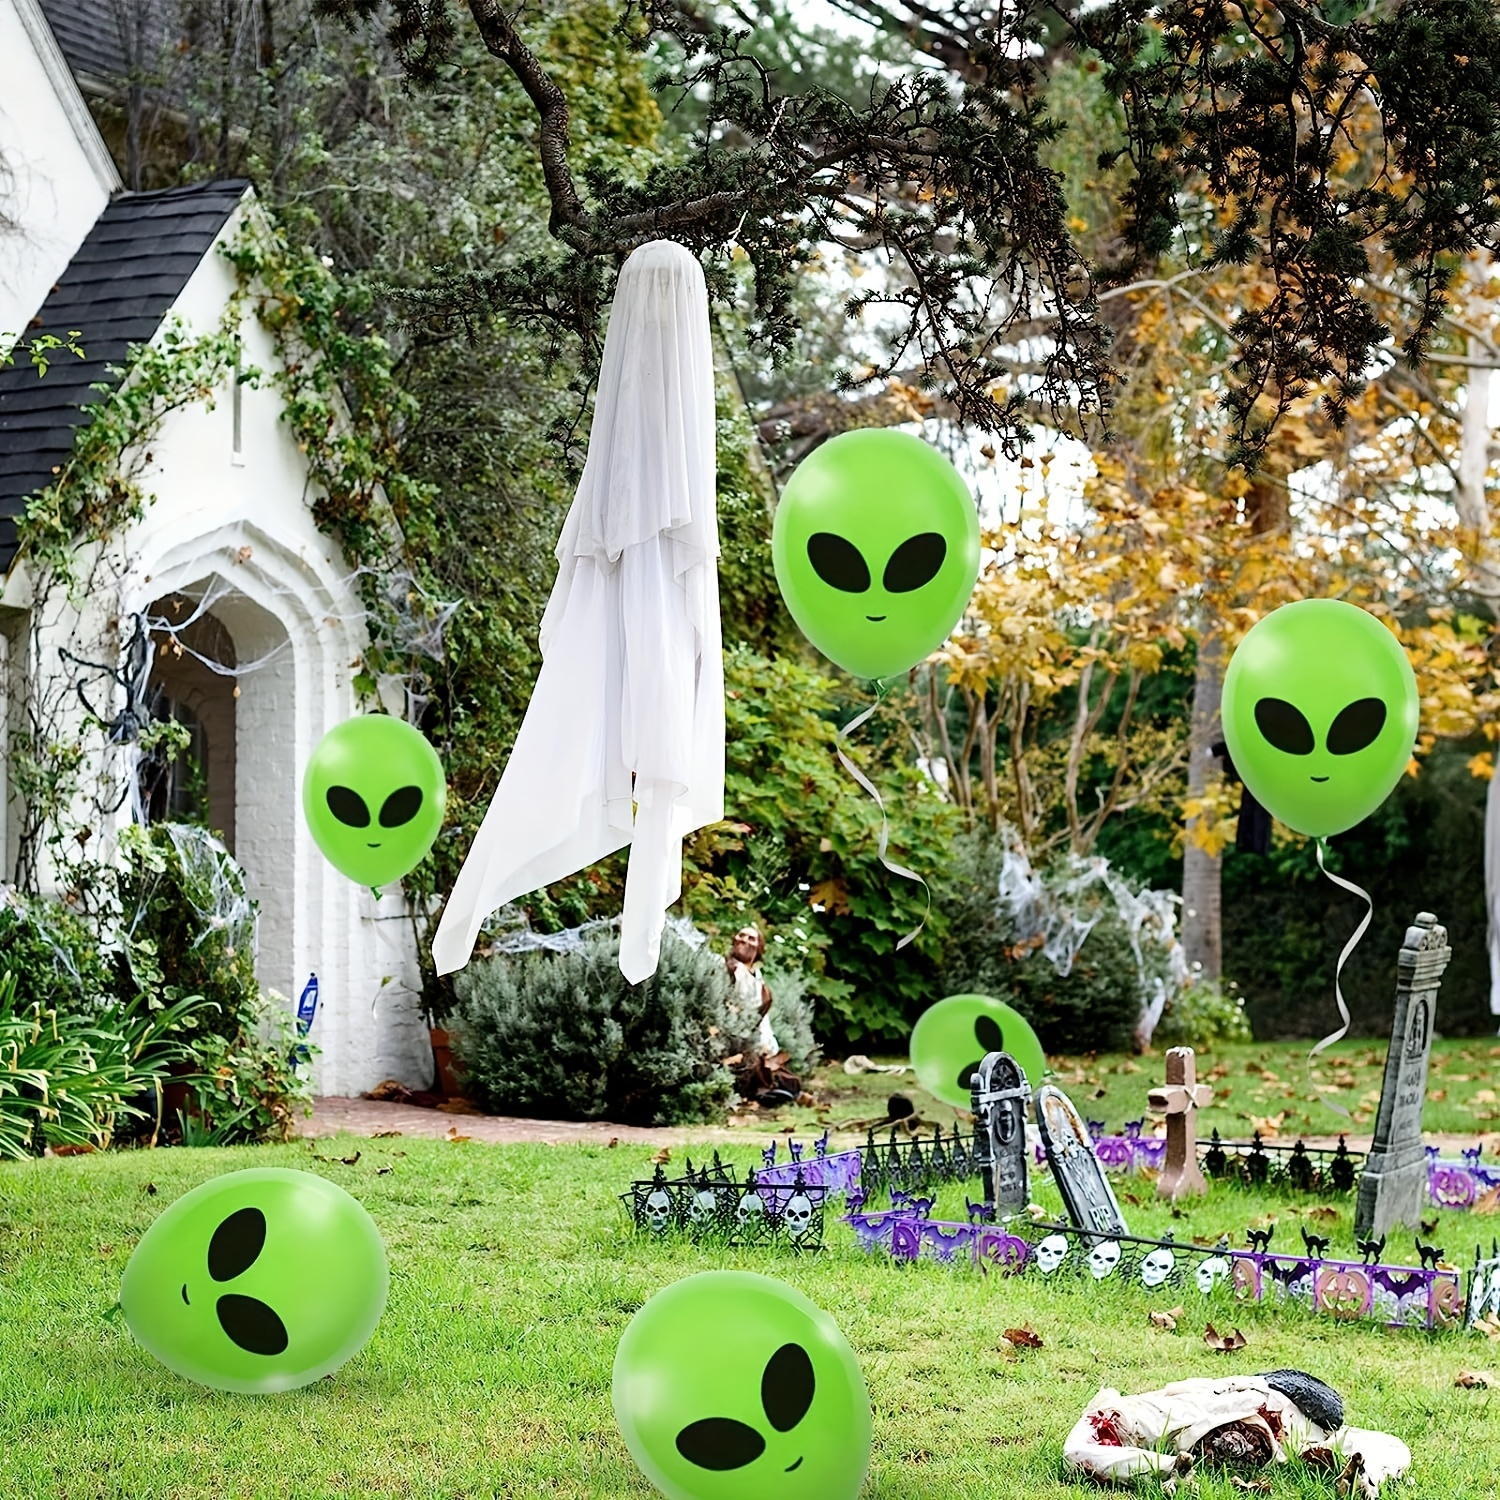 12 globos inflables grandes de alienígena para decoración de fiesta de  alienígenas, fondo verde de 31.5 pulgadas para alienígena espacial  alienígena